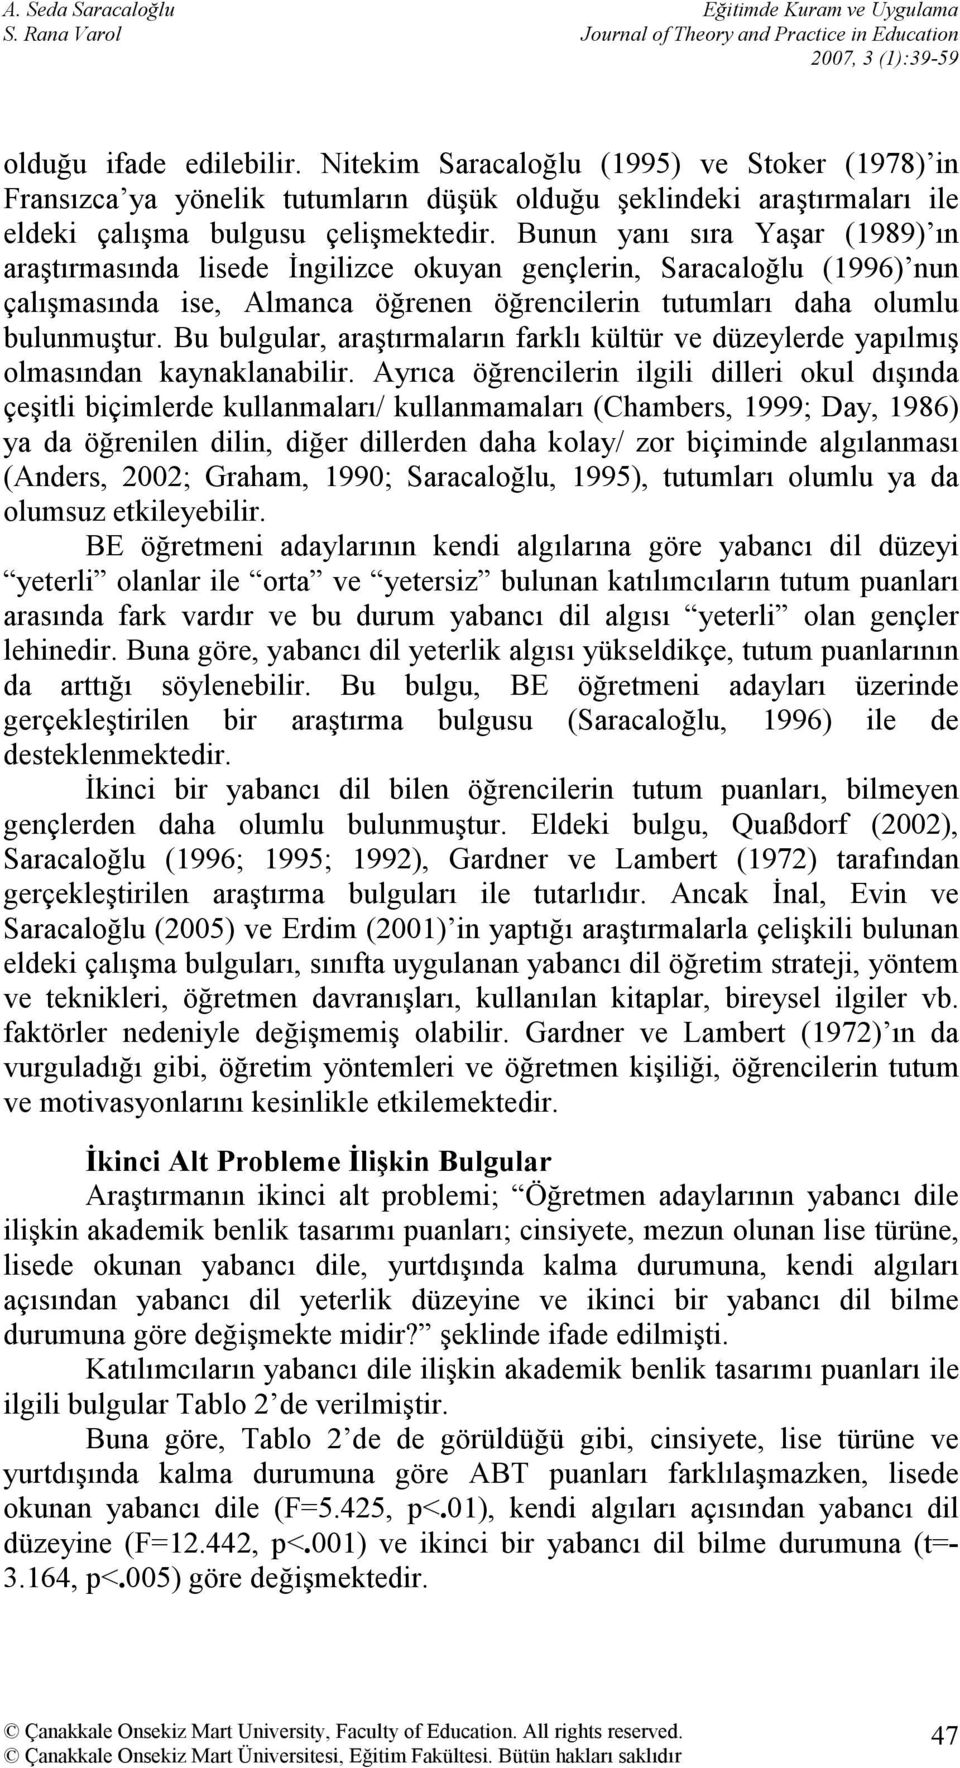 Bunun yanı sıra Yaşar (1989) ın araştırmasında lisede İngilizce okuyan gençlerin, Saracaloğlu (1996) nun çalışmasında ise, Almanca öğrenen öğrencilerin tutumları daha olumlu bulunmuştur.